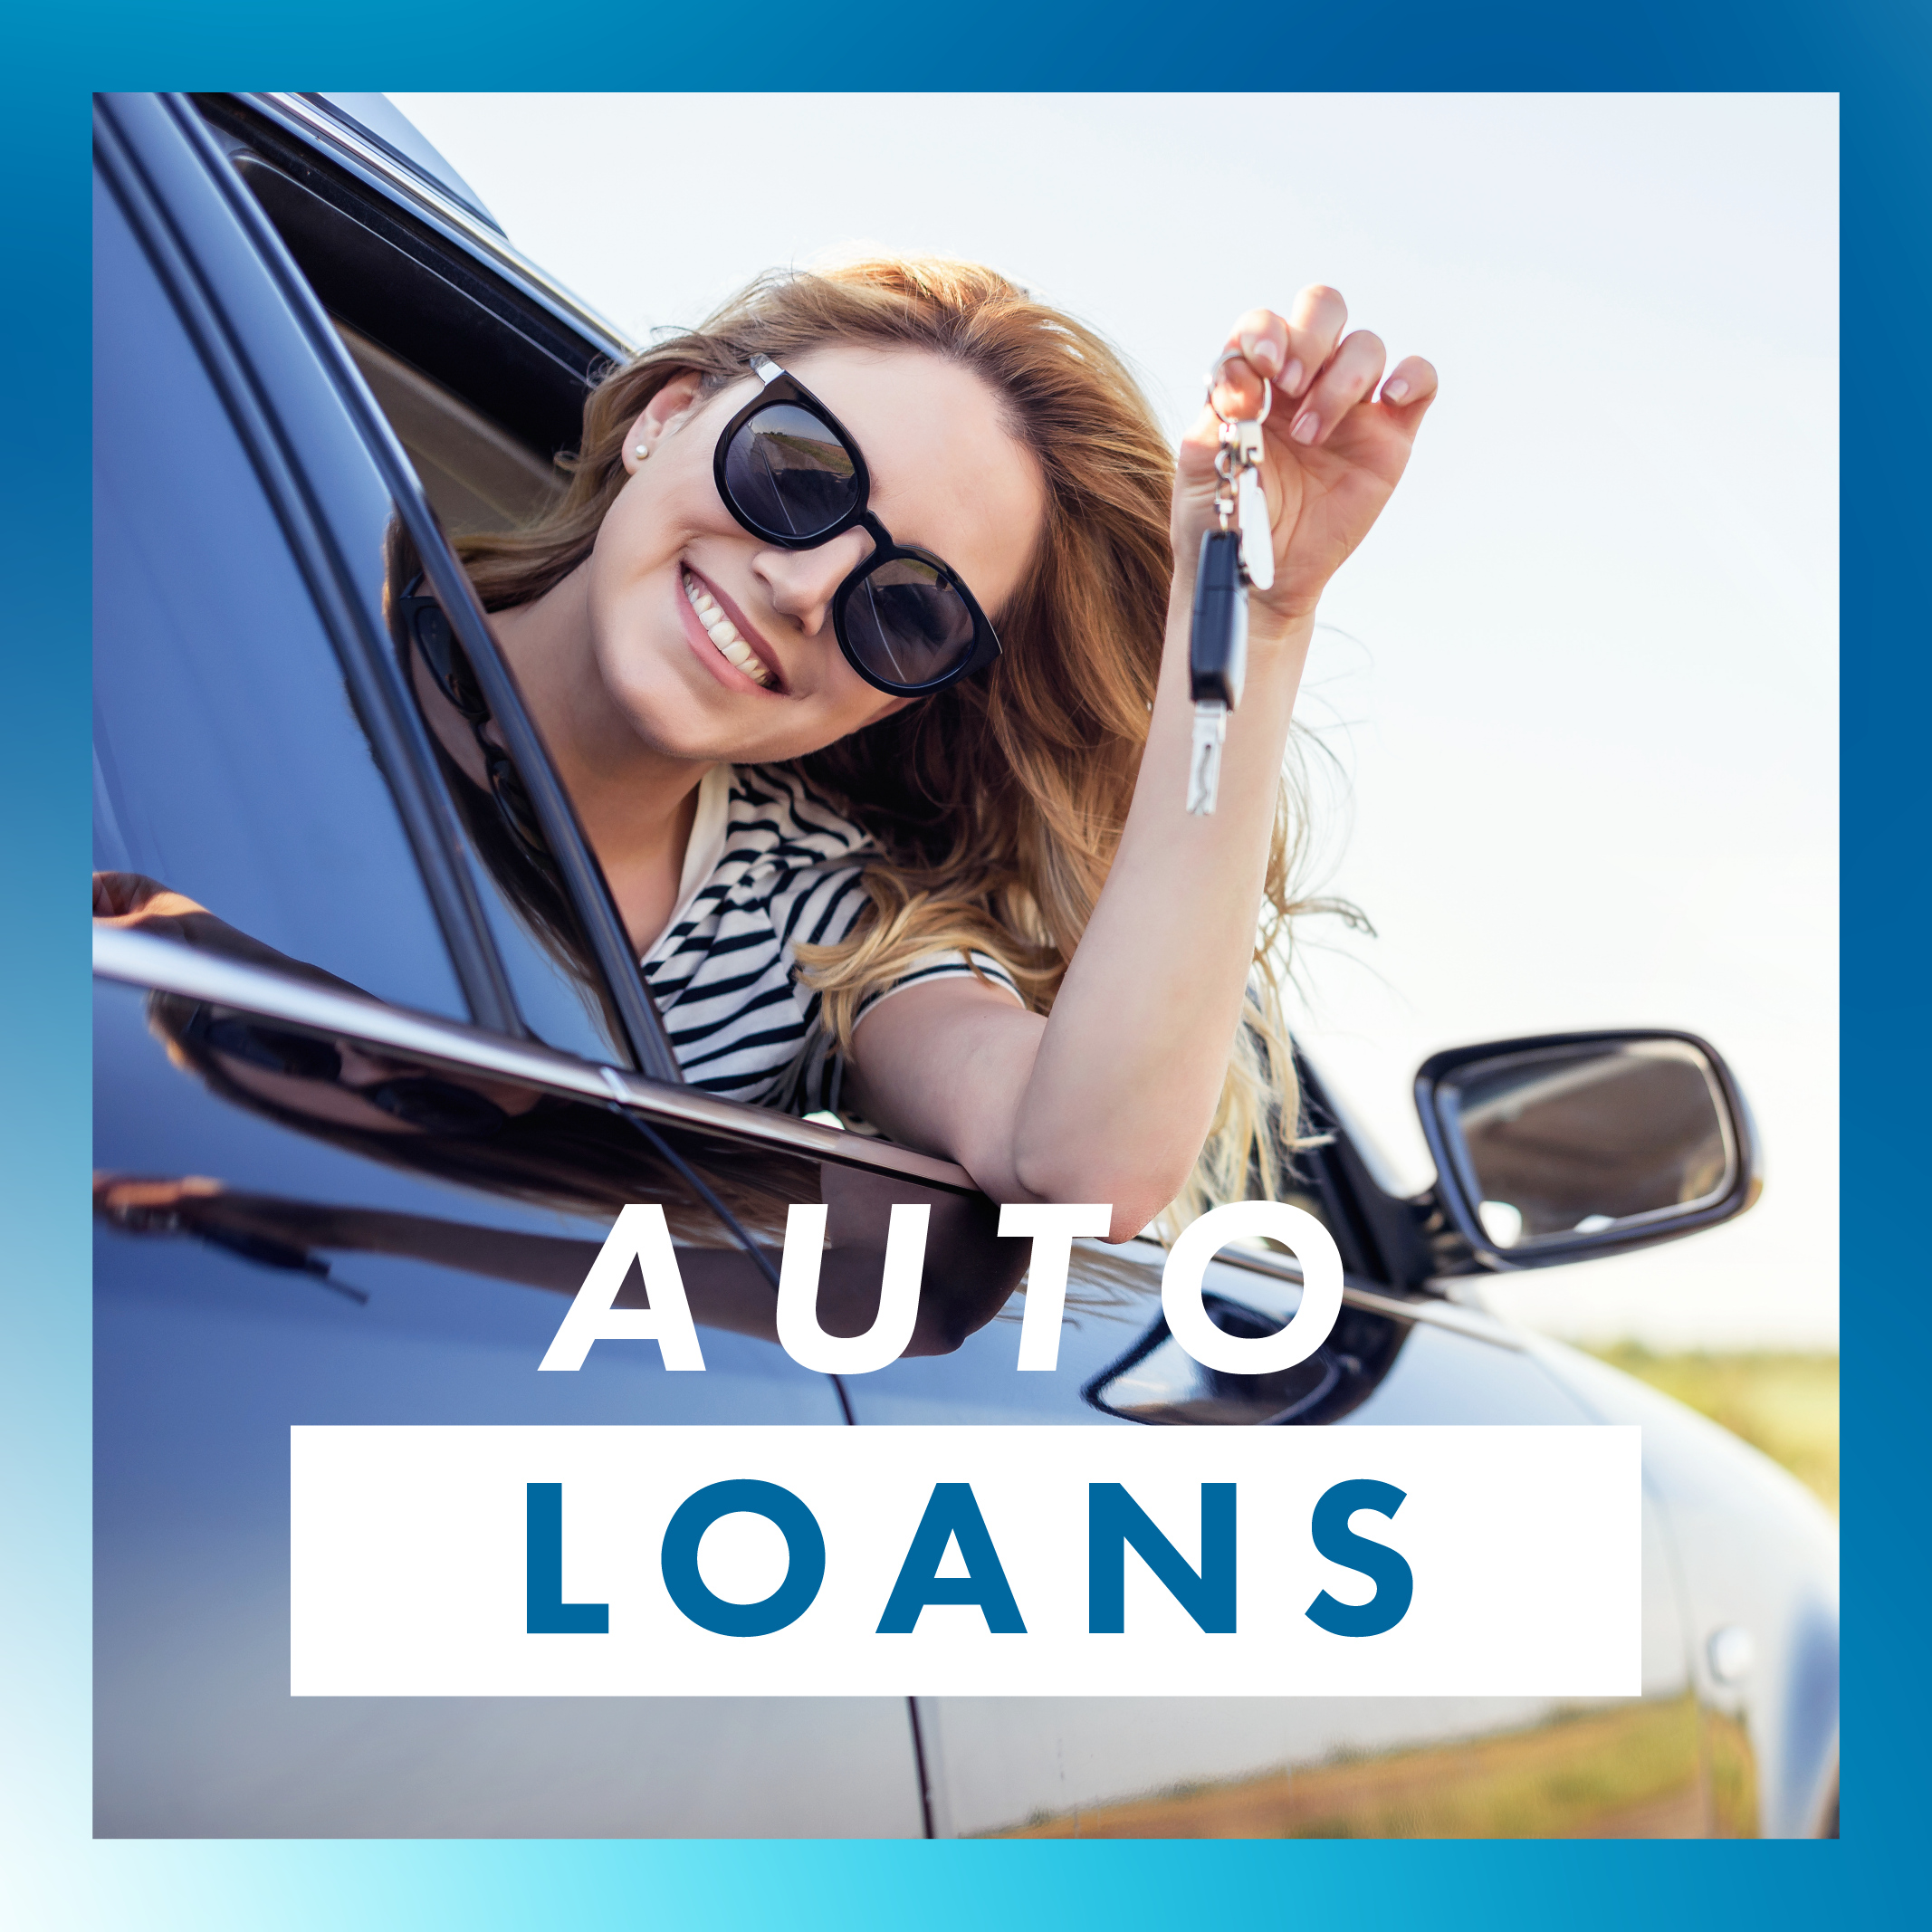 LAUSA Auto Loans